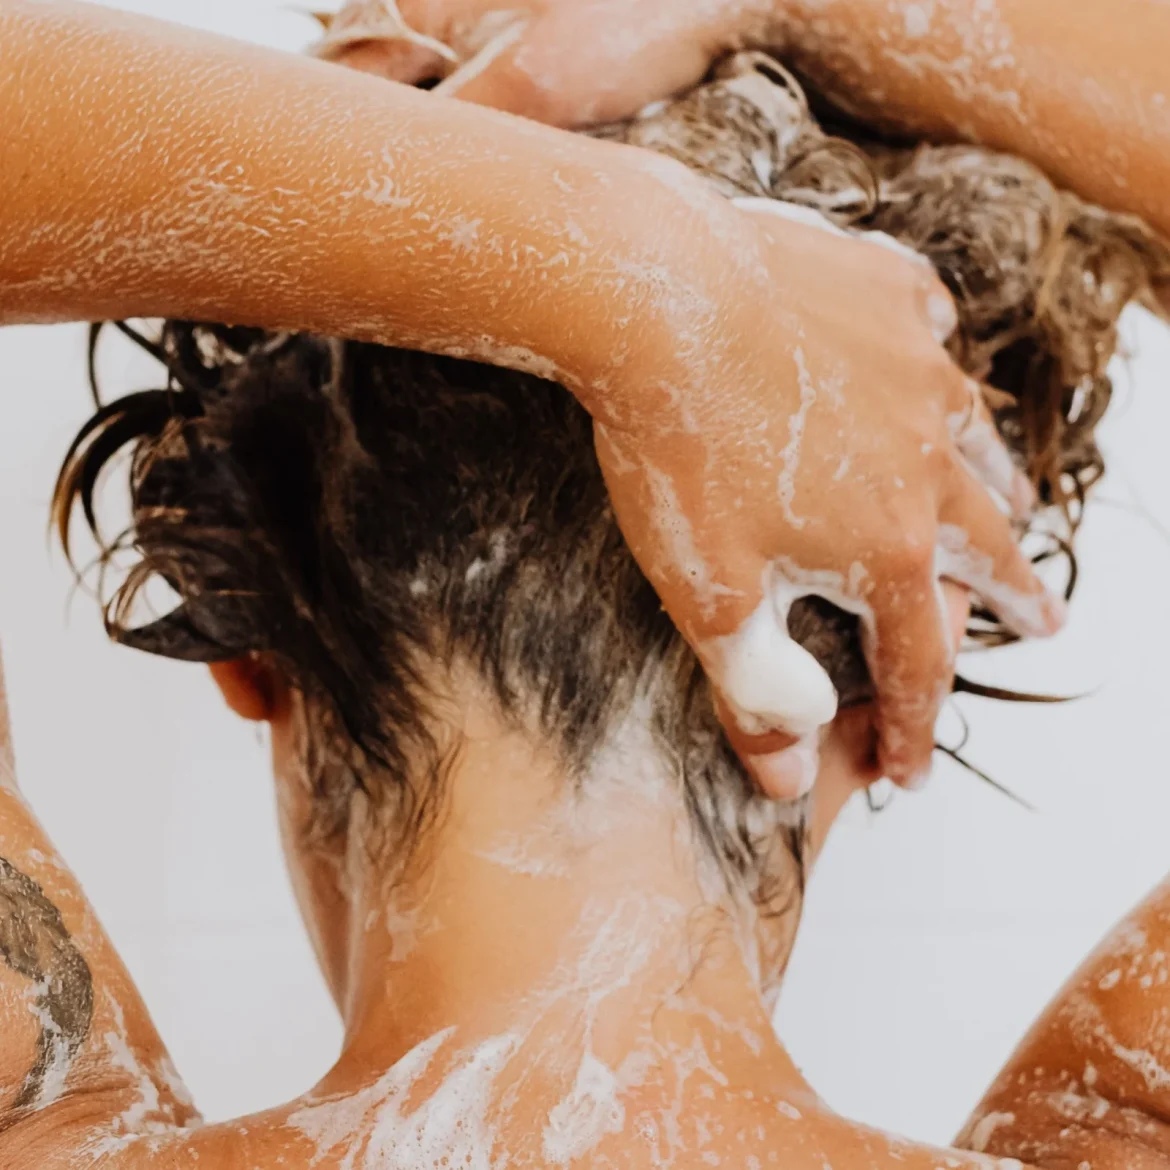 Vrouw wast haar haren met shampoo